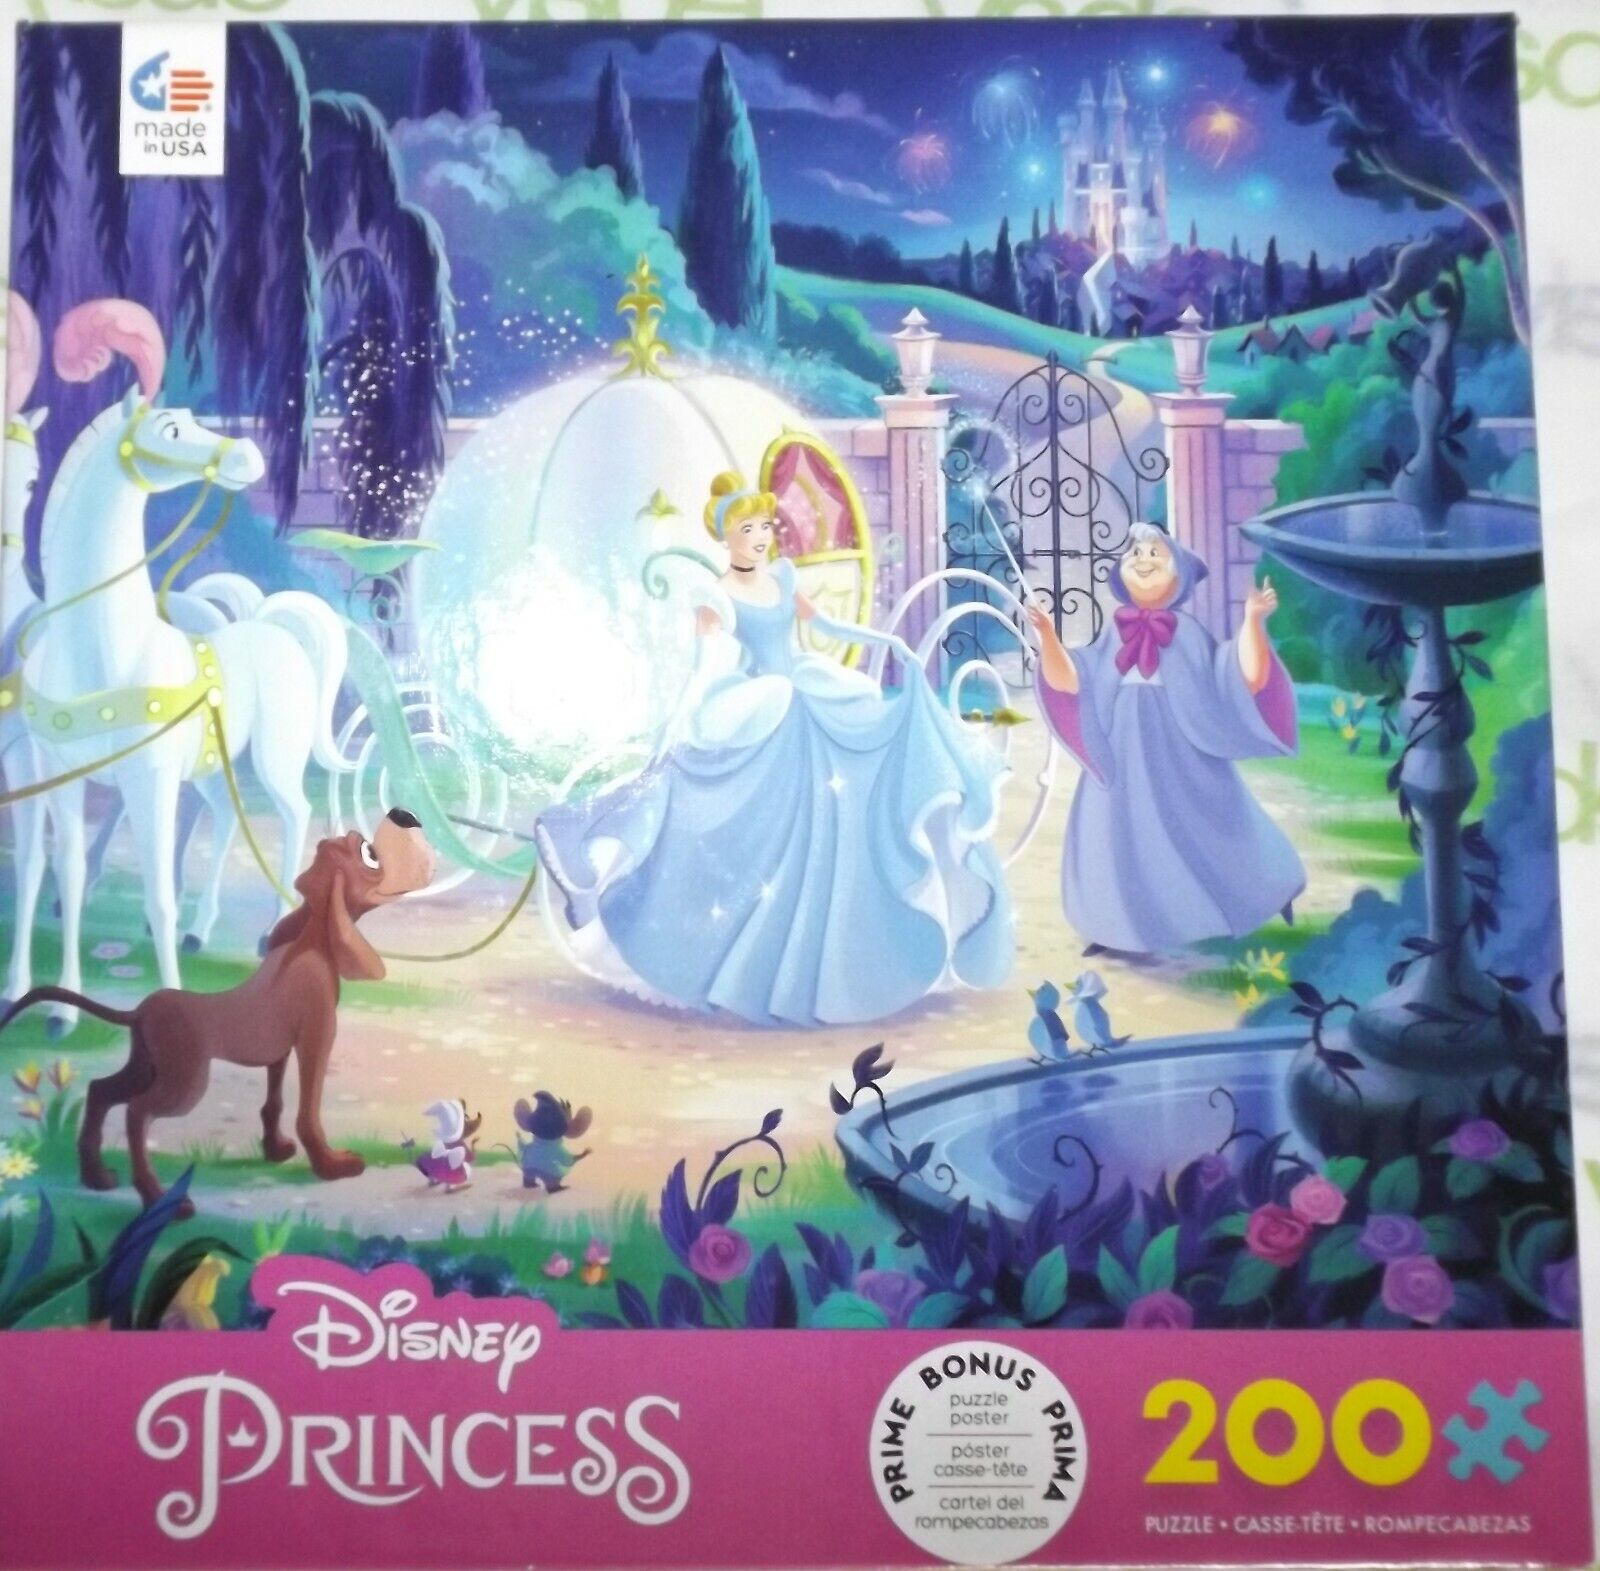 Disney Princess Cinderella 200 piece puzzle in box with poster EUC